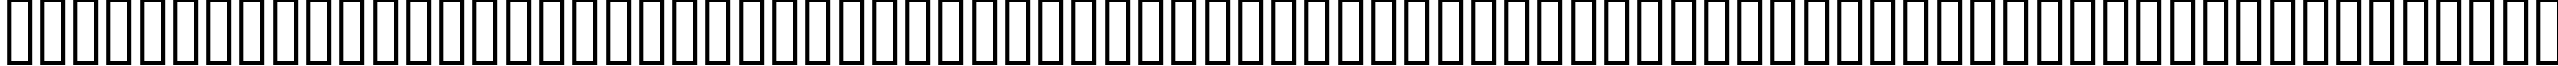 Пример написания английского алфавита шрифтом ELLIS